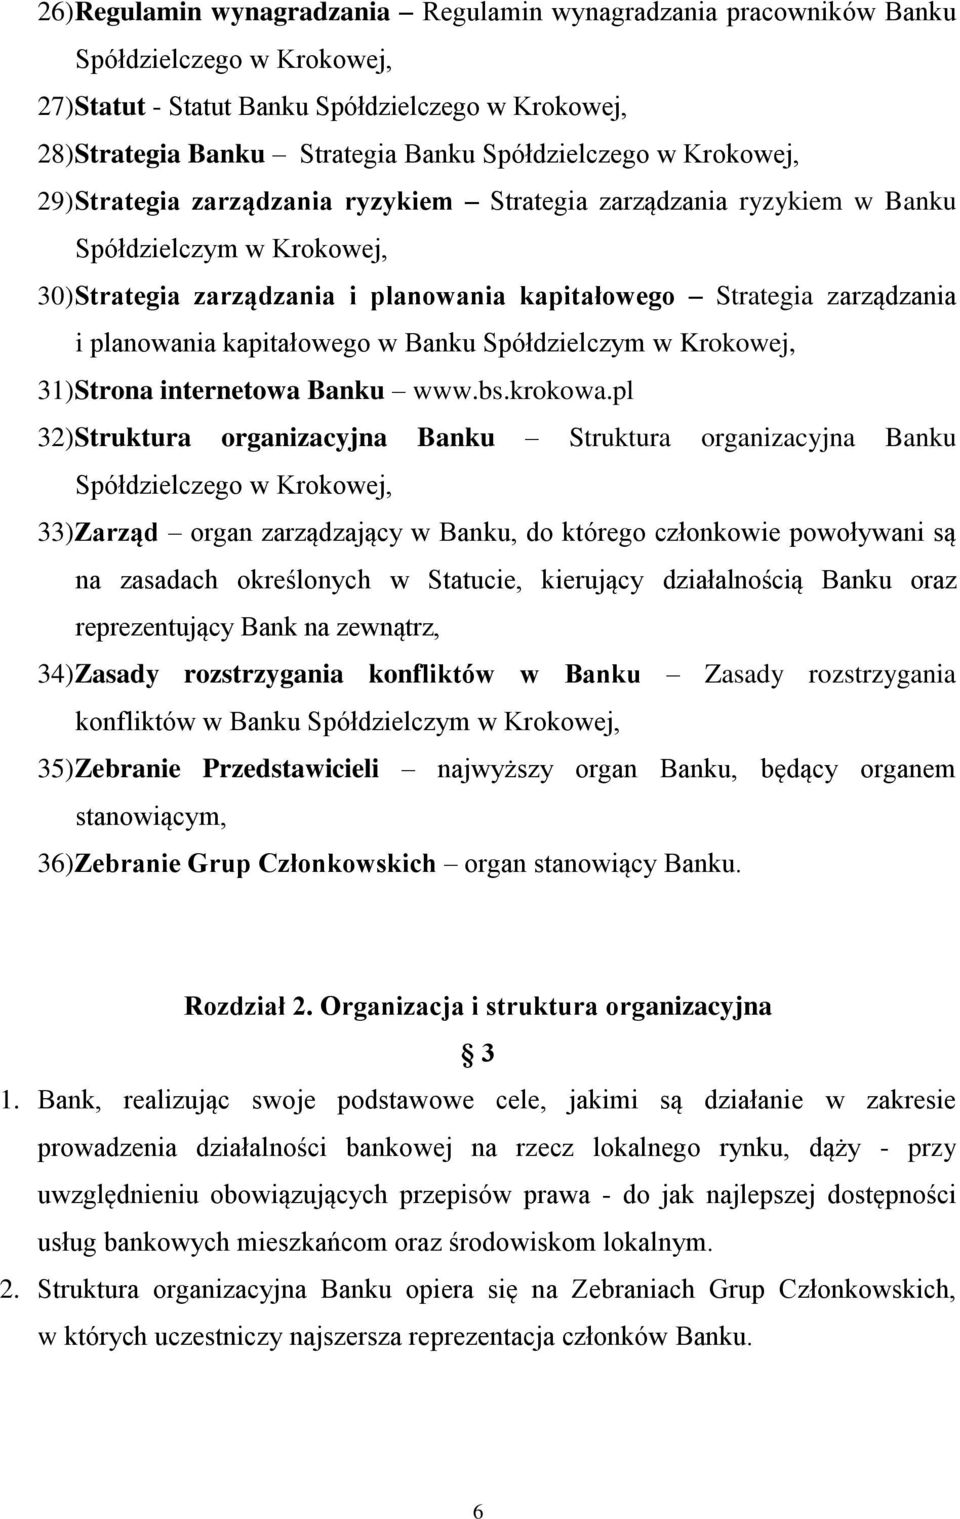 zarządzania i planowania kapitałowego w Banku Spółdzielczym w Krokowej, 31) Strona internetowa Banku www.bs.krokowa.